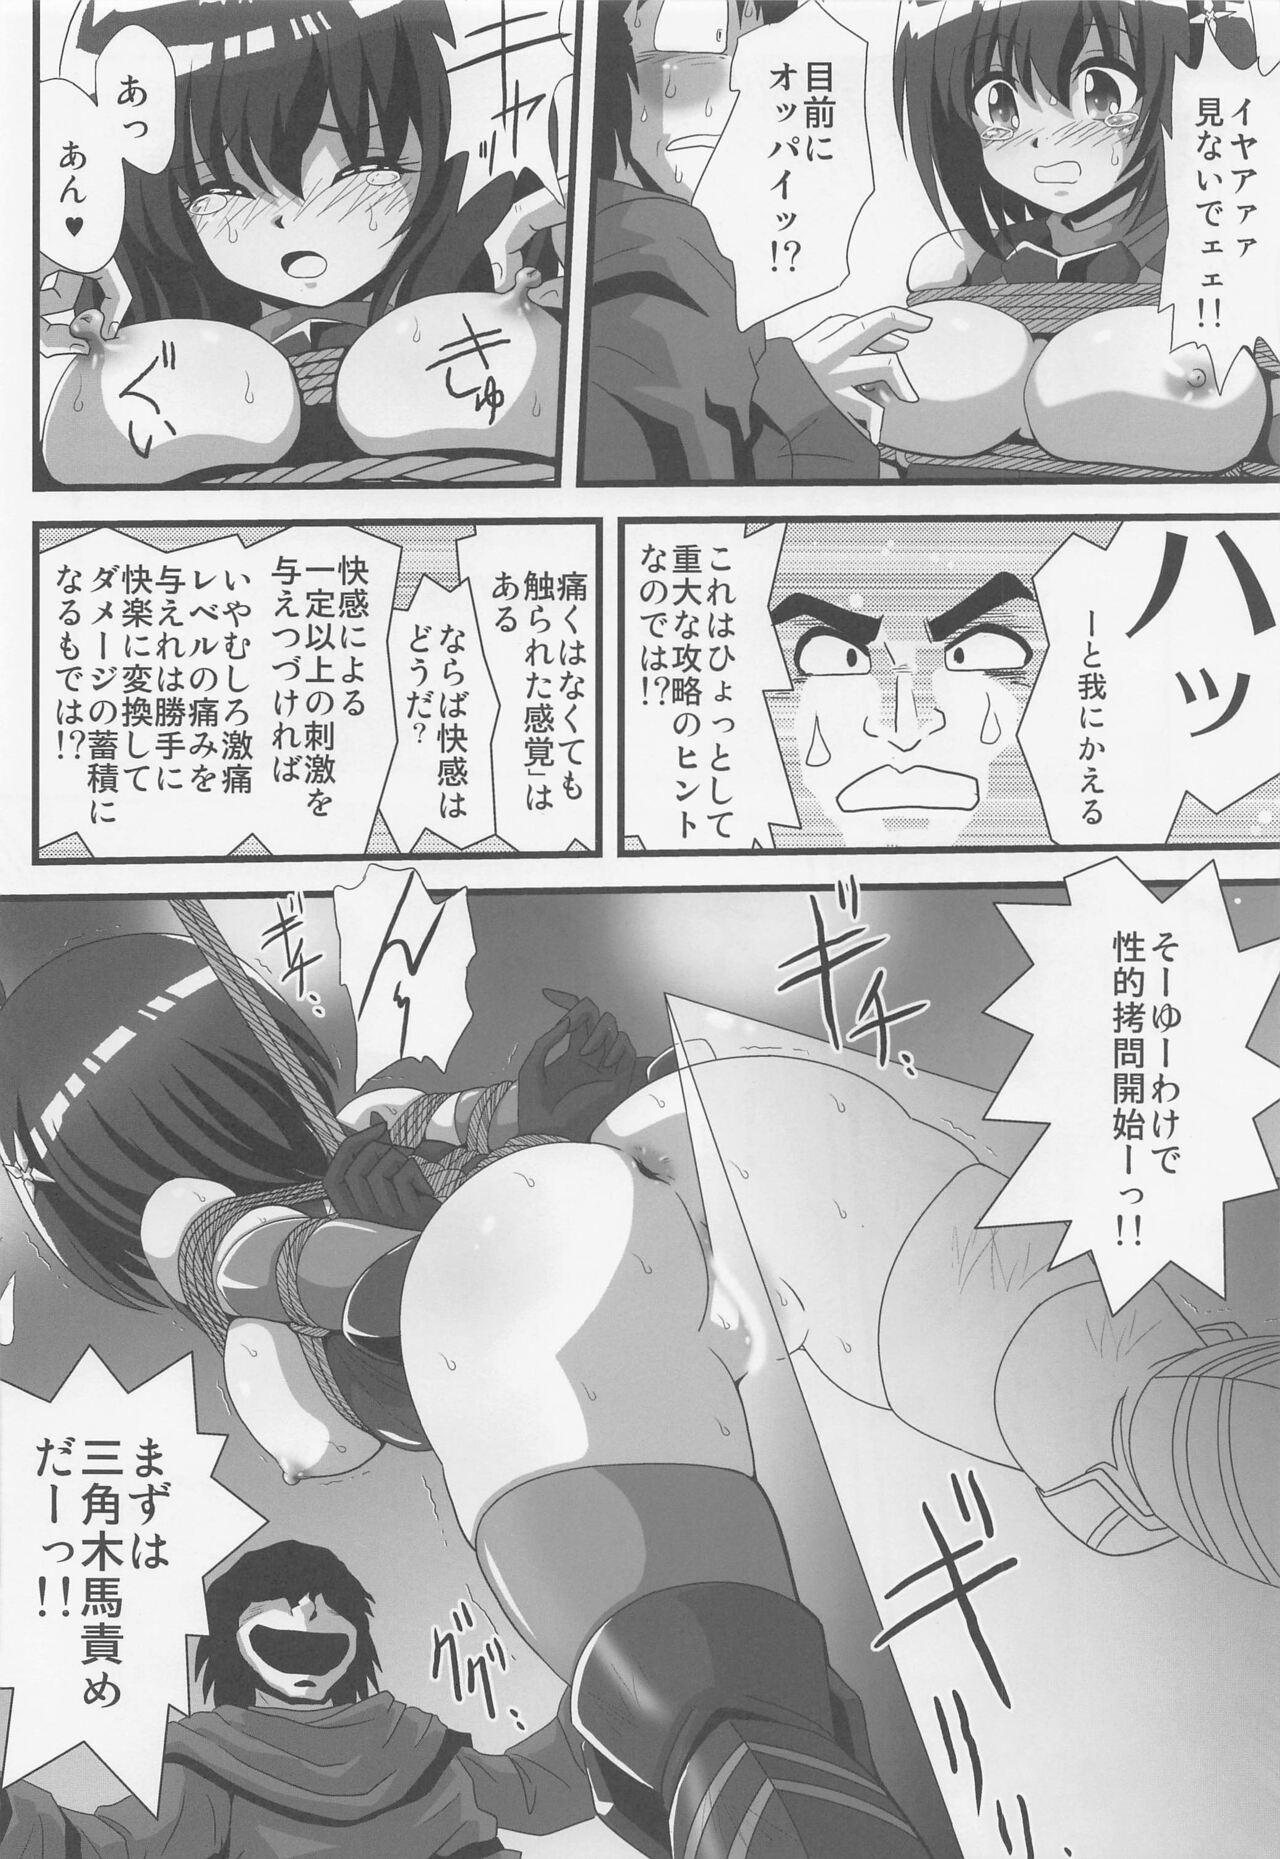 Gostoso Itai no wa Iyarashii node 1 - Itai no wa iya nano de bougyoryoku ni kyokufuri shitai to omoimasu. Sextape - Page 5